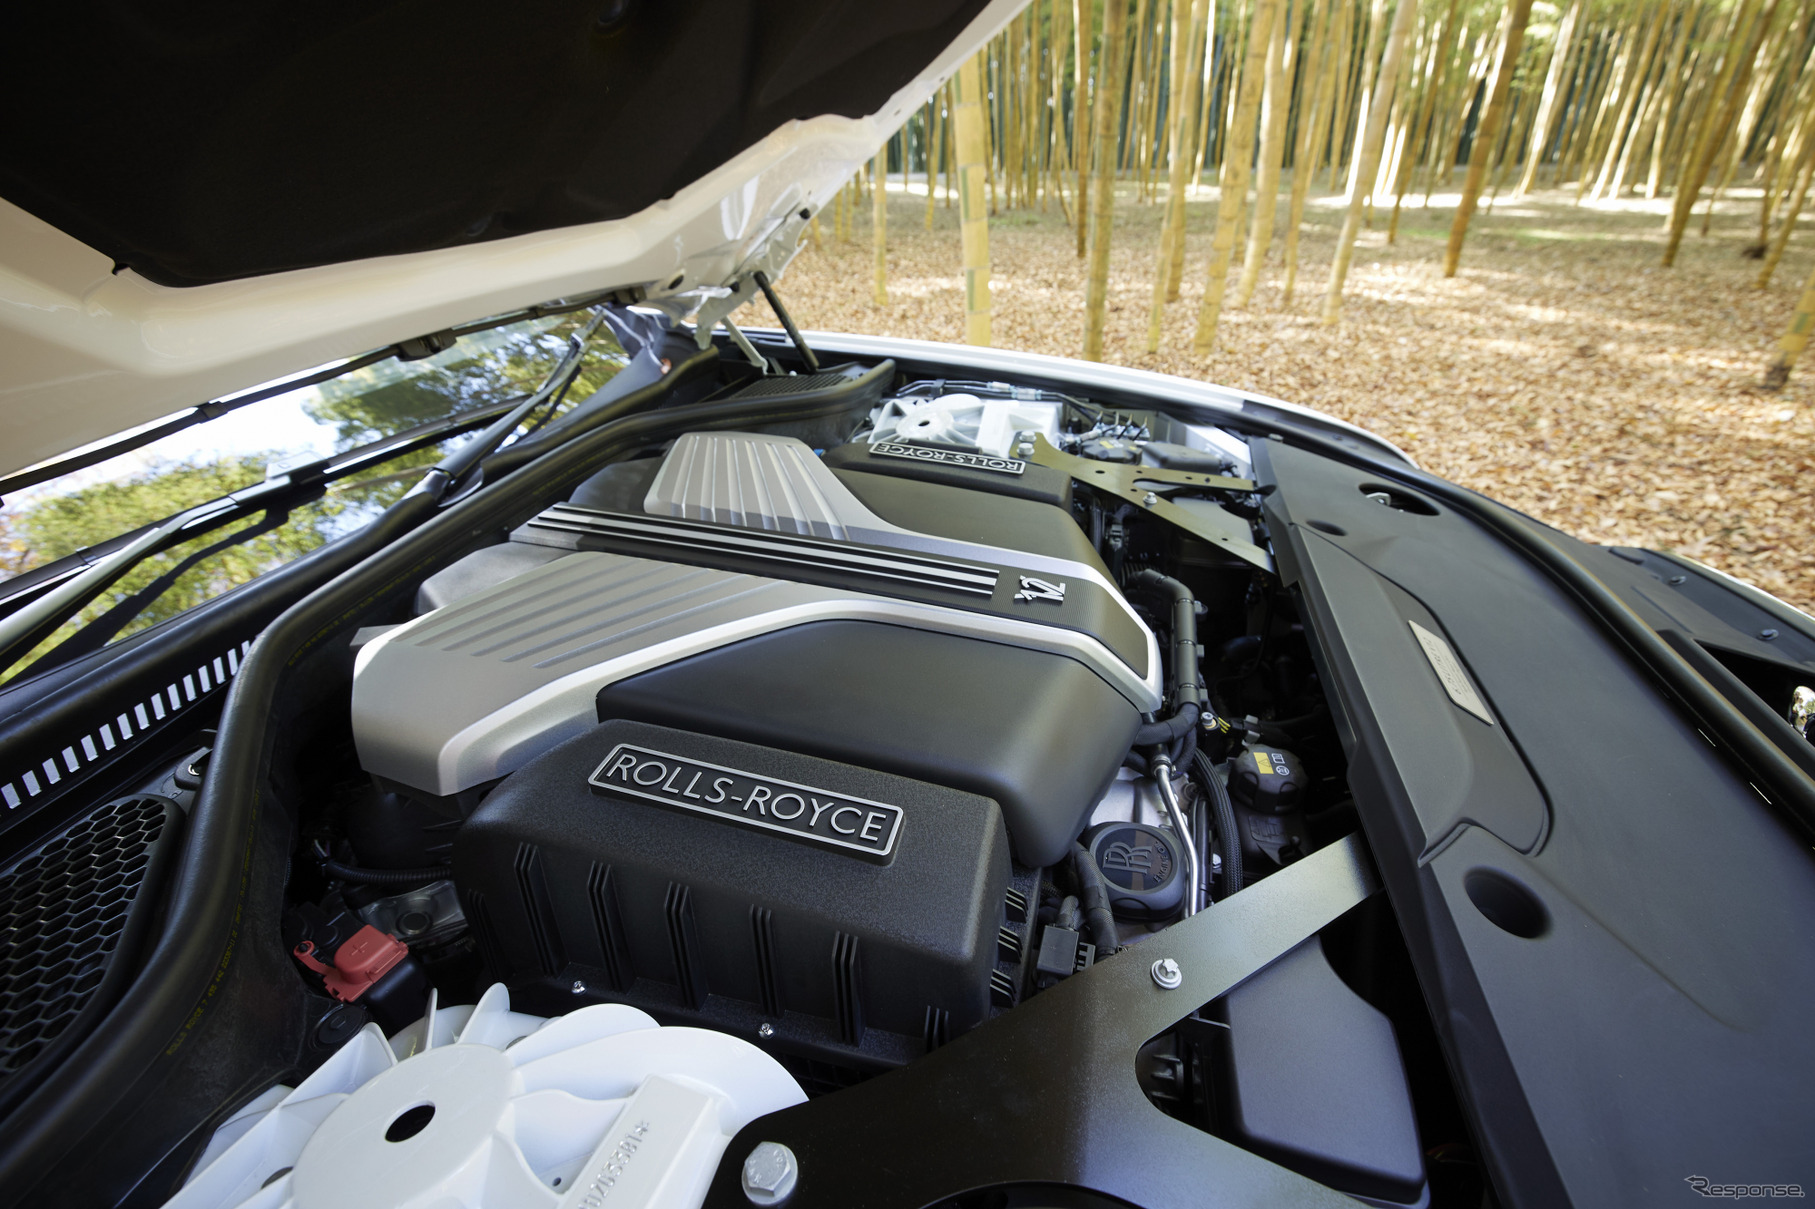 ロールス・ロイス ゴースト 新型 エンジンはV12の6.75リッター（最高出力571ps /最大トルク850Nm）